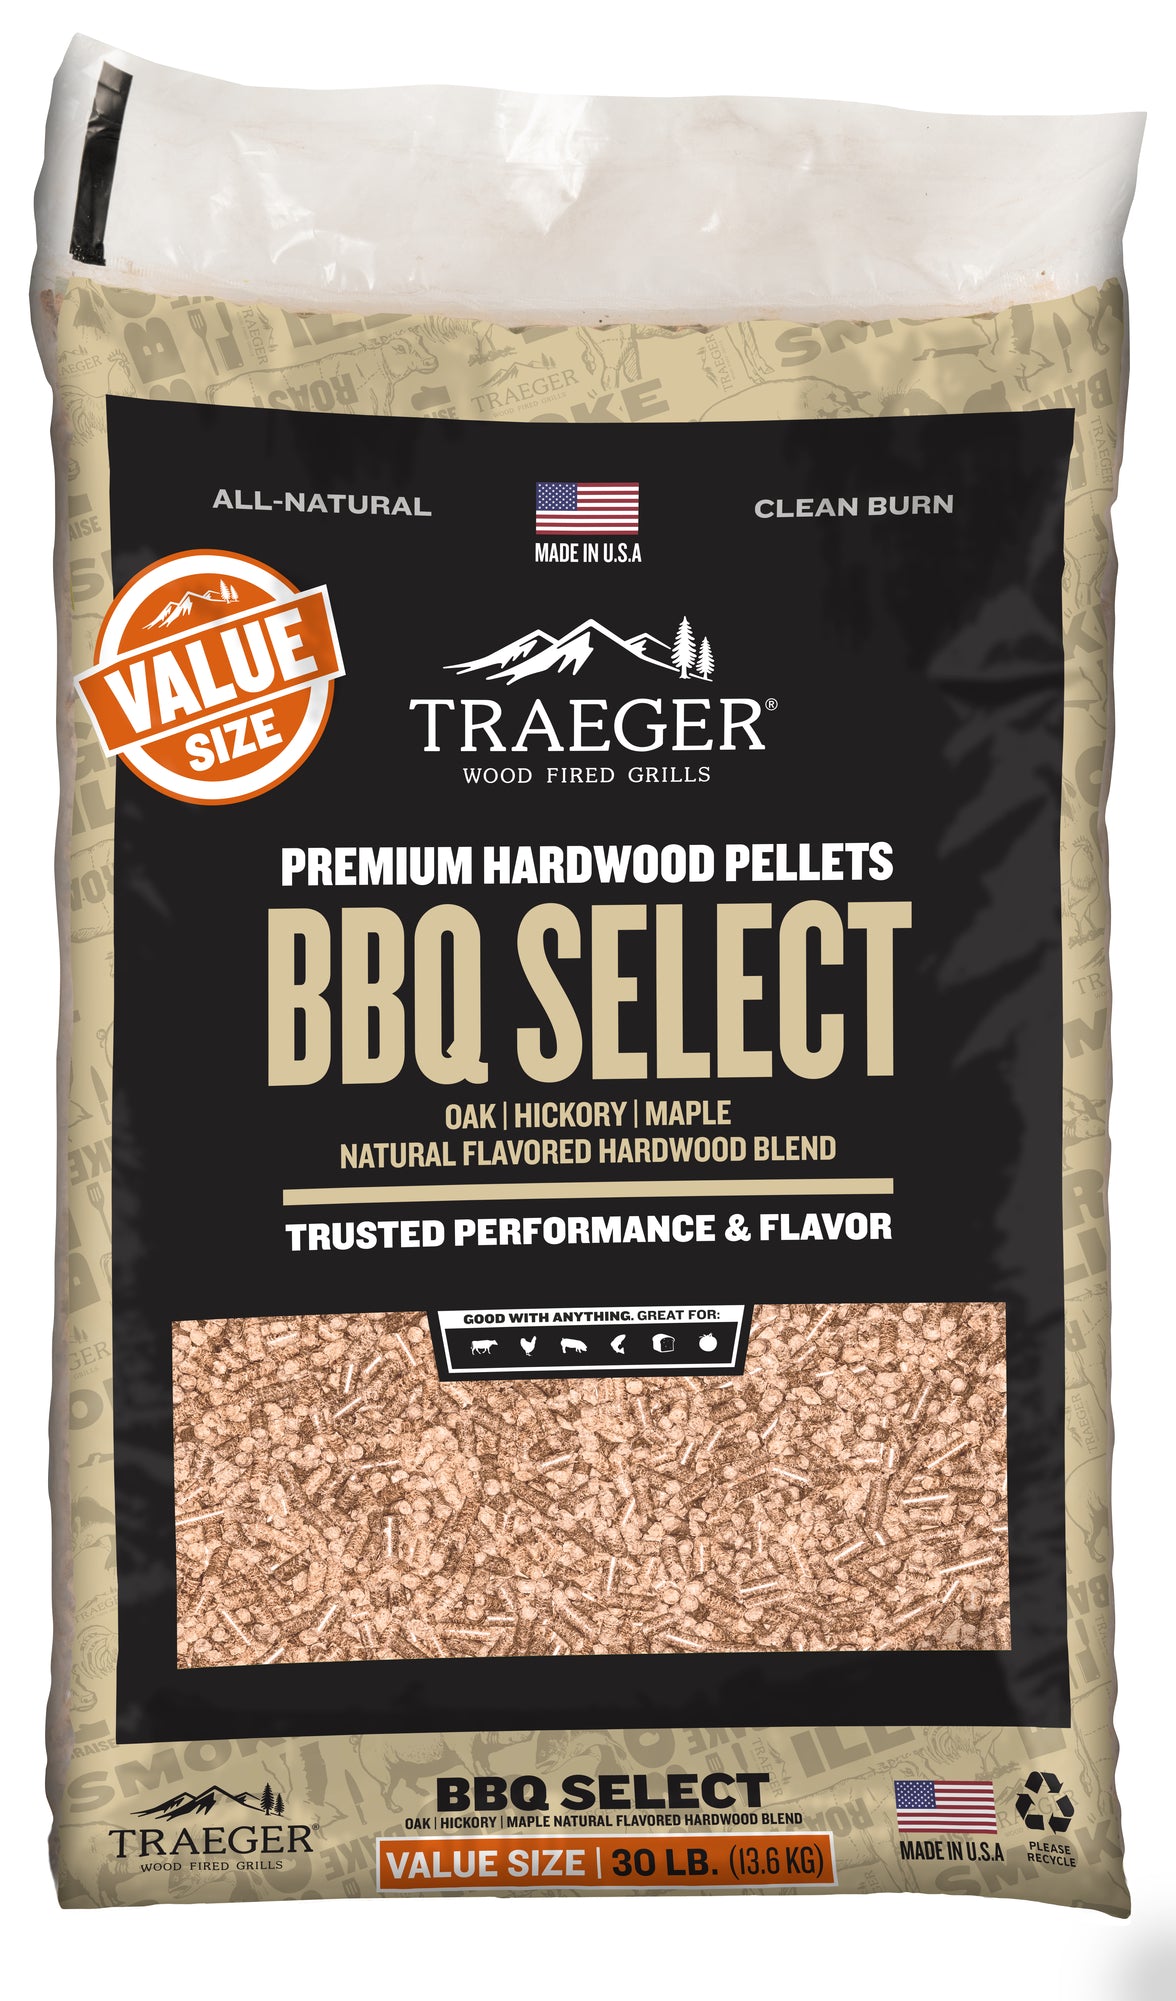 Traeger hardwood pellets | BBQ Select | 30 lb value-size bag